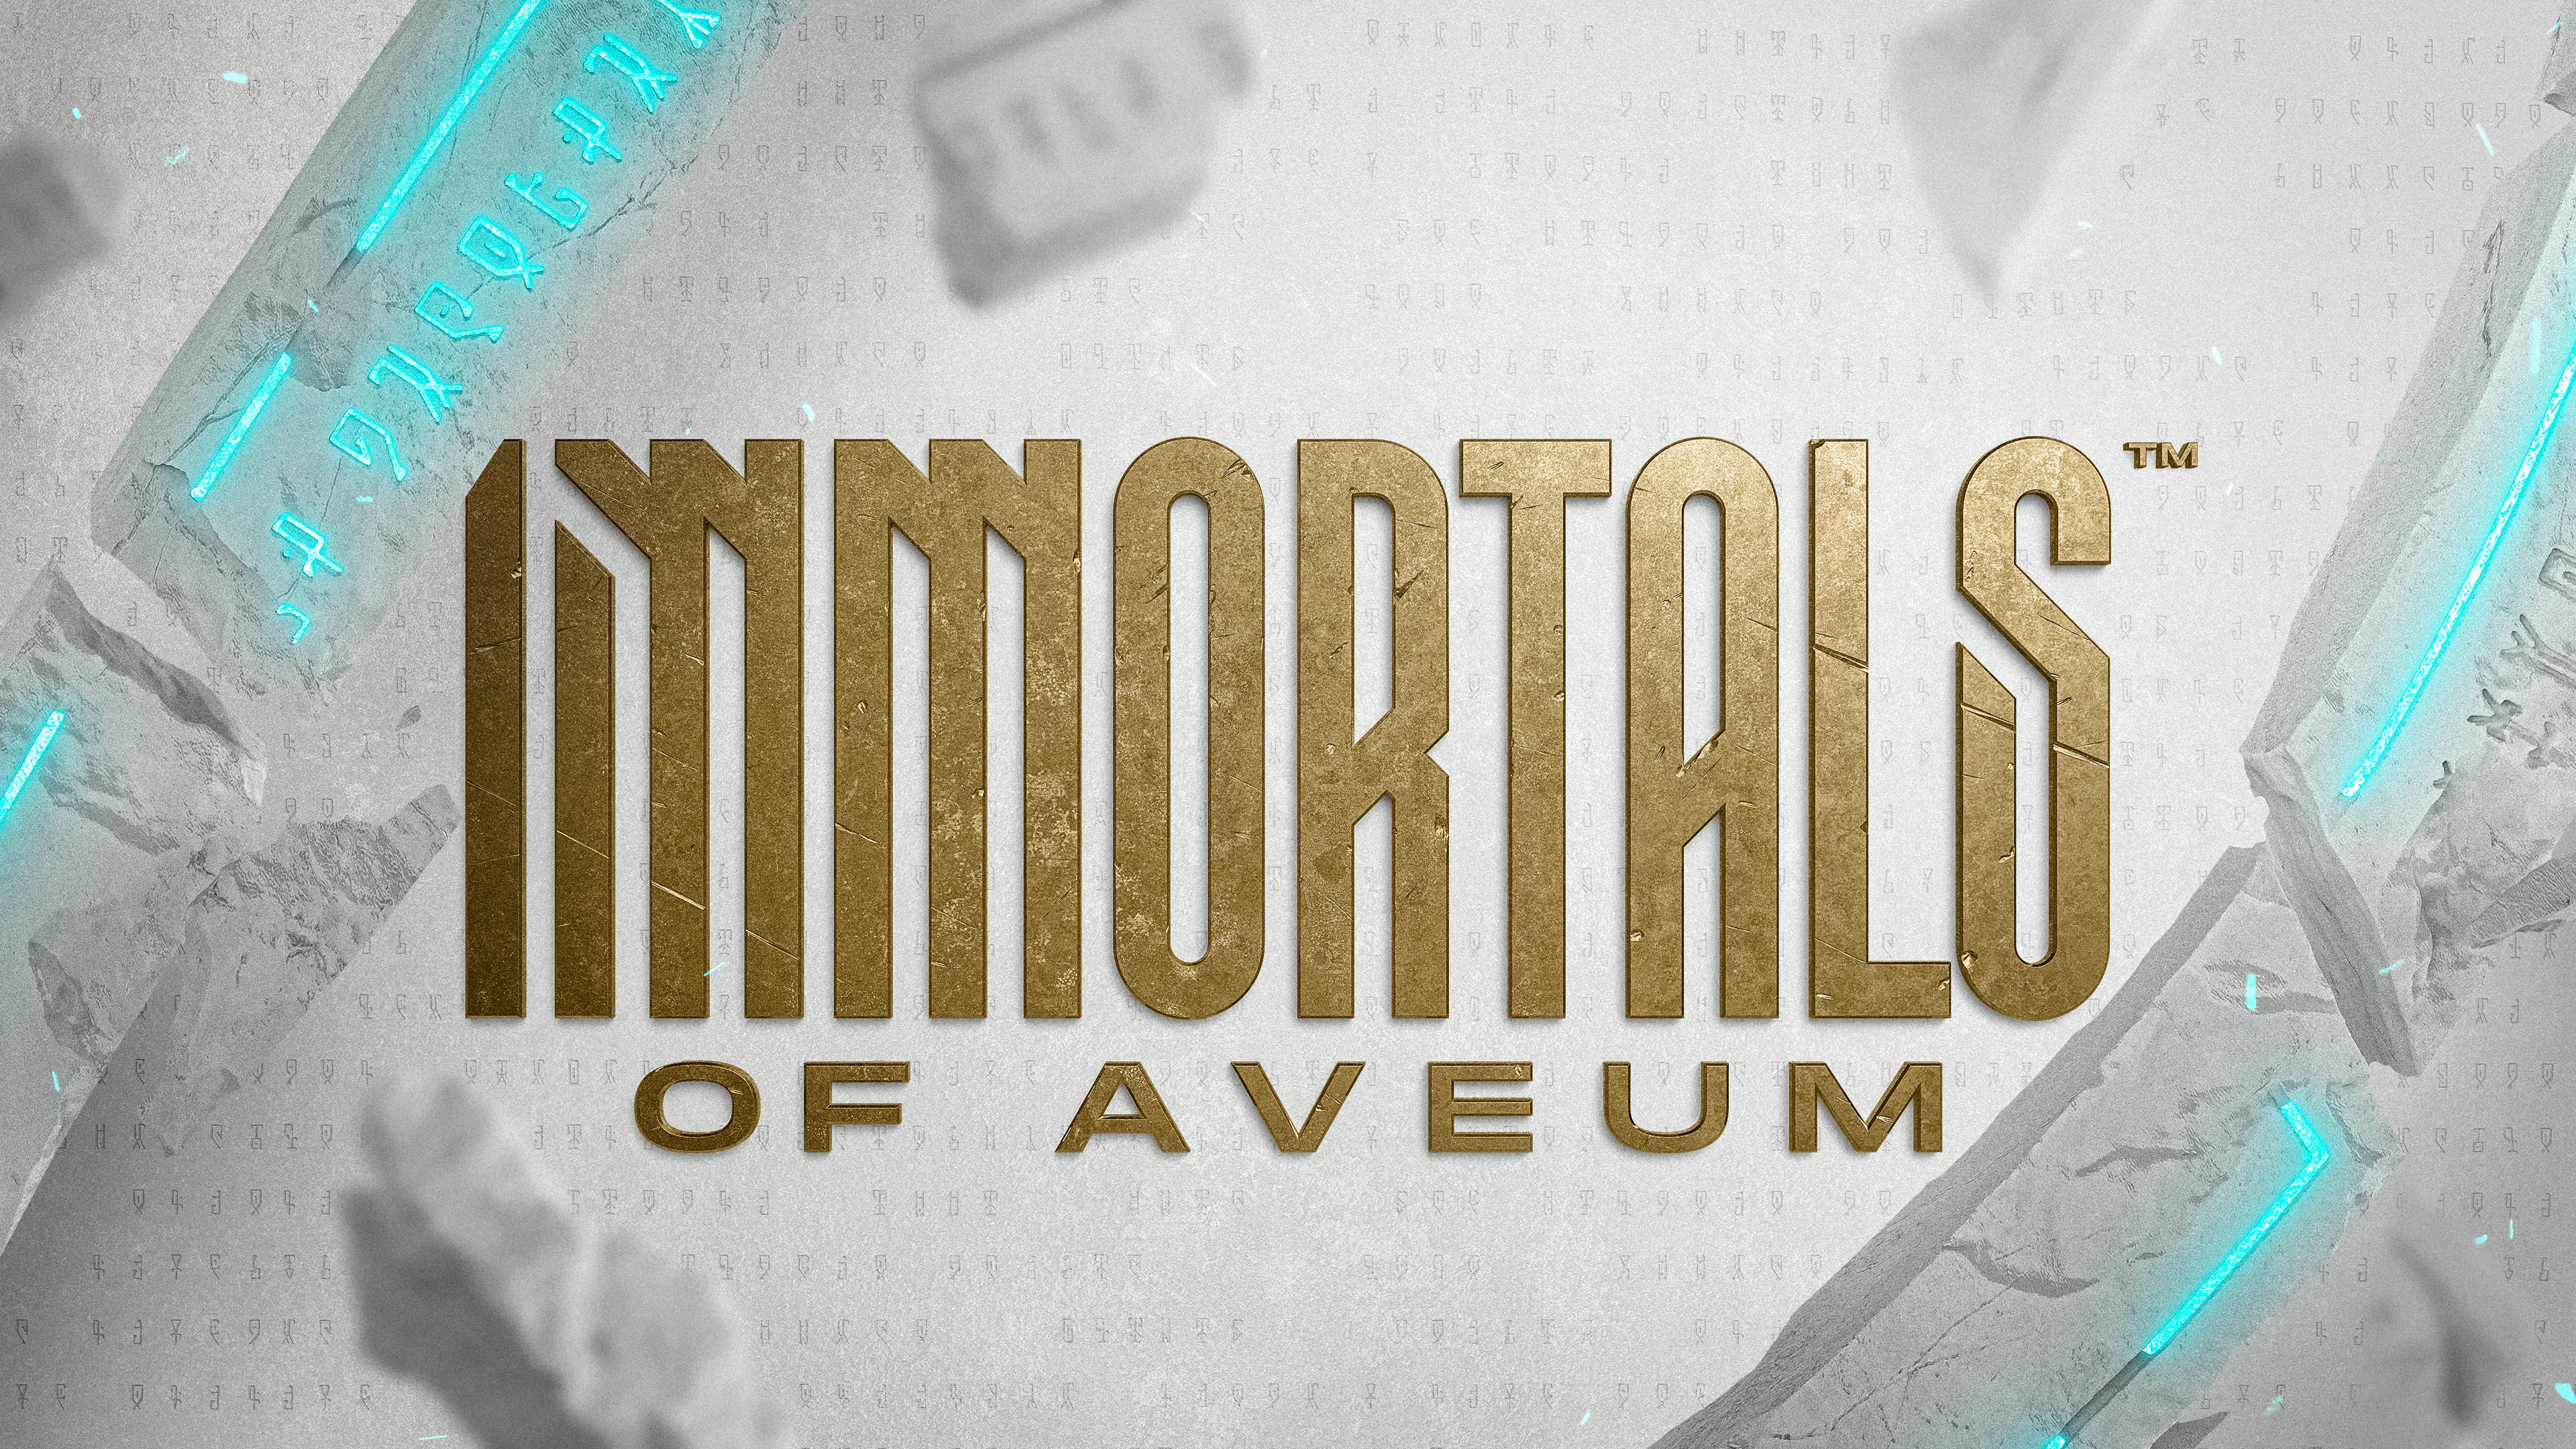 Immortals of aveum 2022 12 08 22 004 13